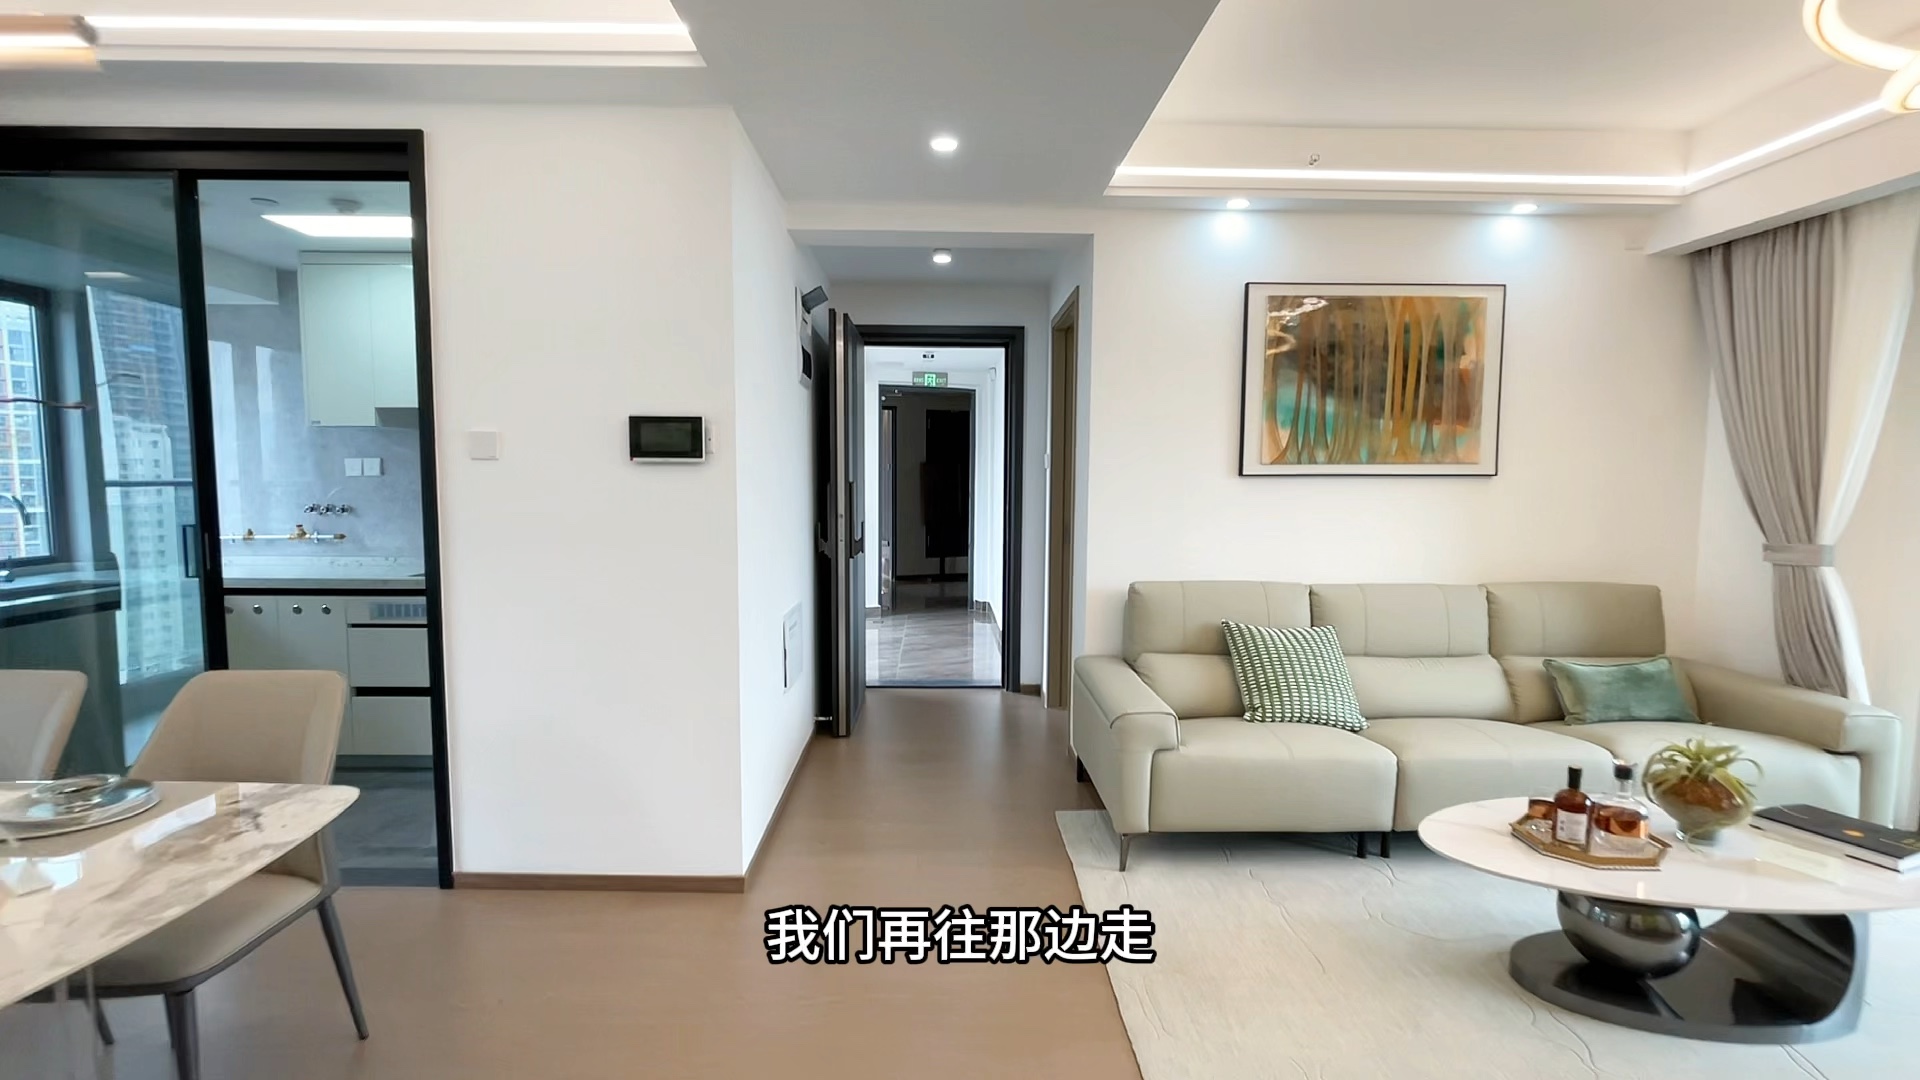 就在昨天，粉丝朋友买的房子，深圳121平4房2厅，空间格局真好，市面上最受欢迎的户型格局…